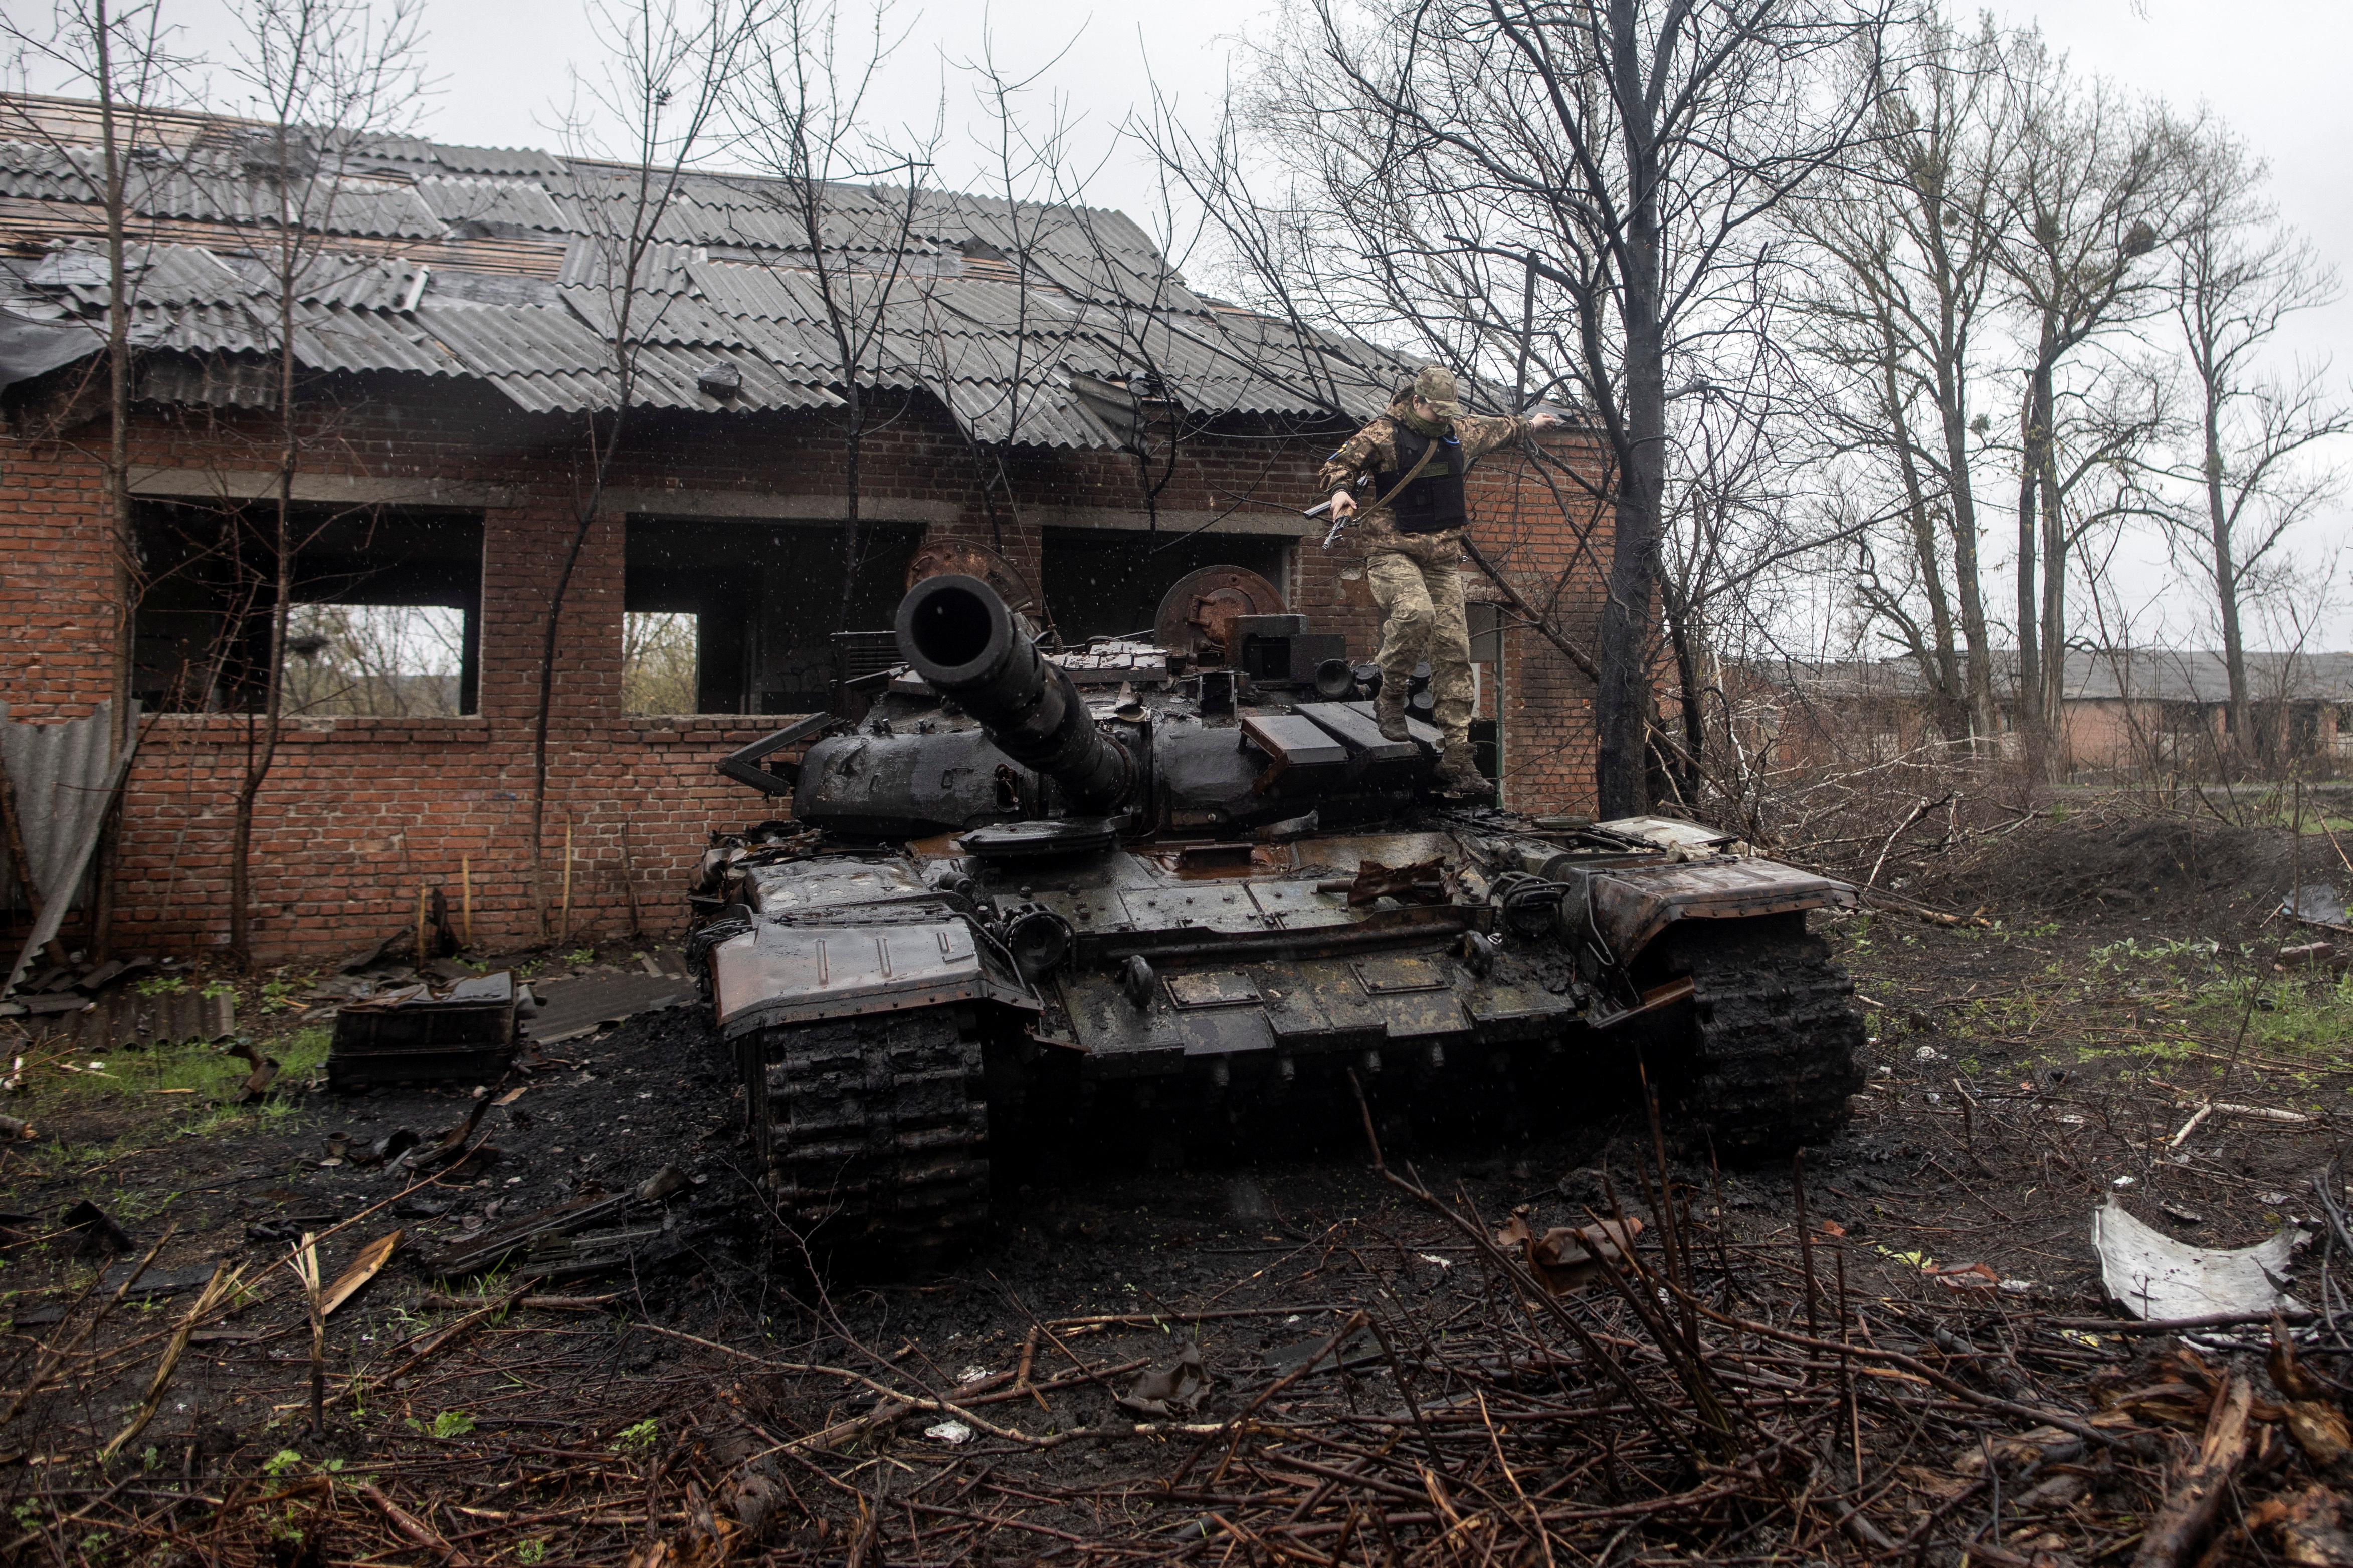 Continua l'attacco russo all'Ucraina nel villaggio di Mala Rohan, nella regione di Kharkiv